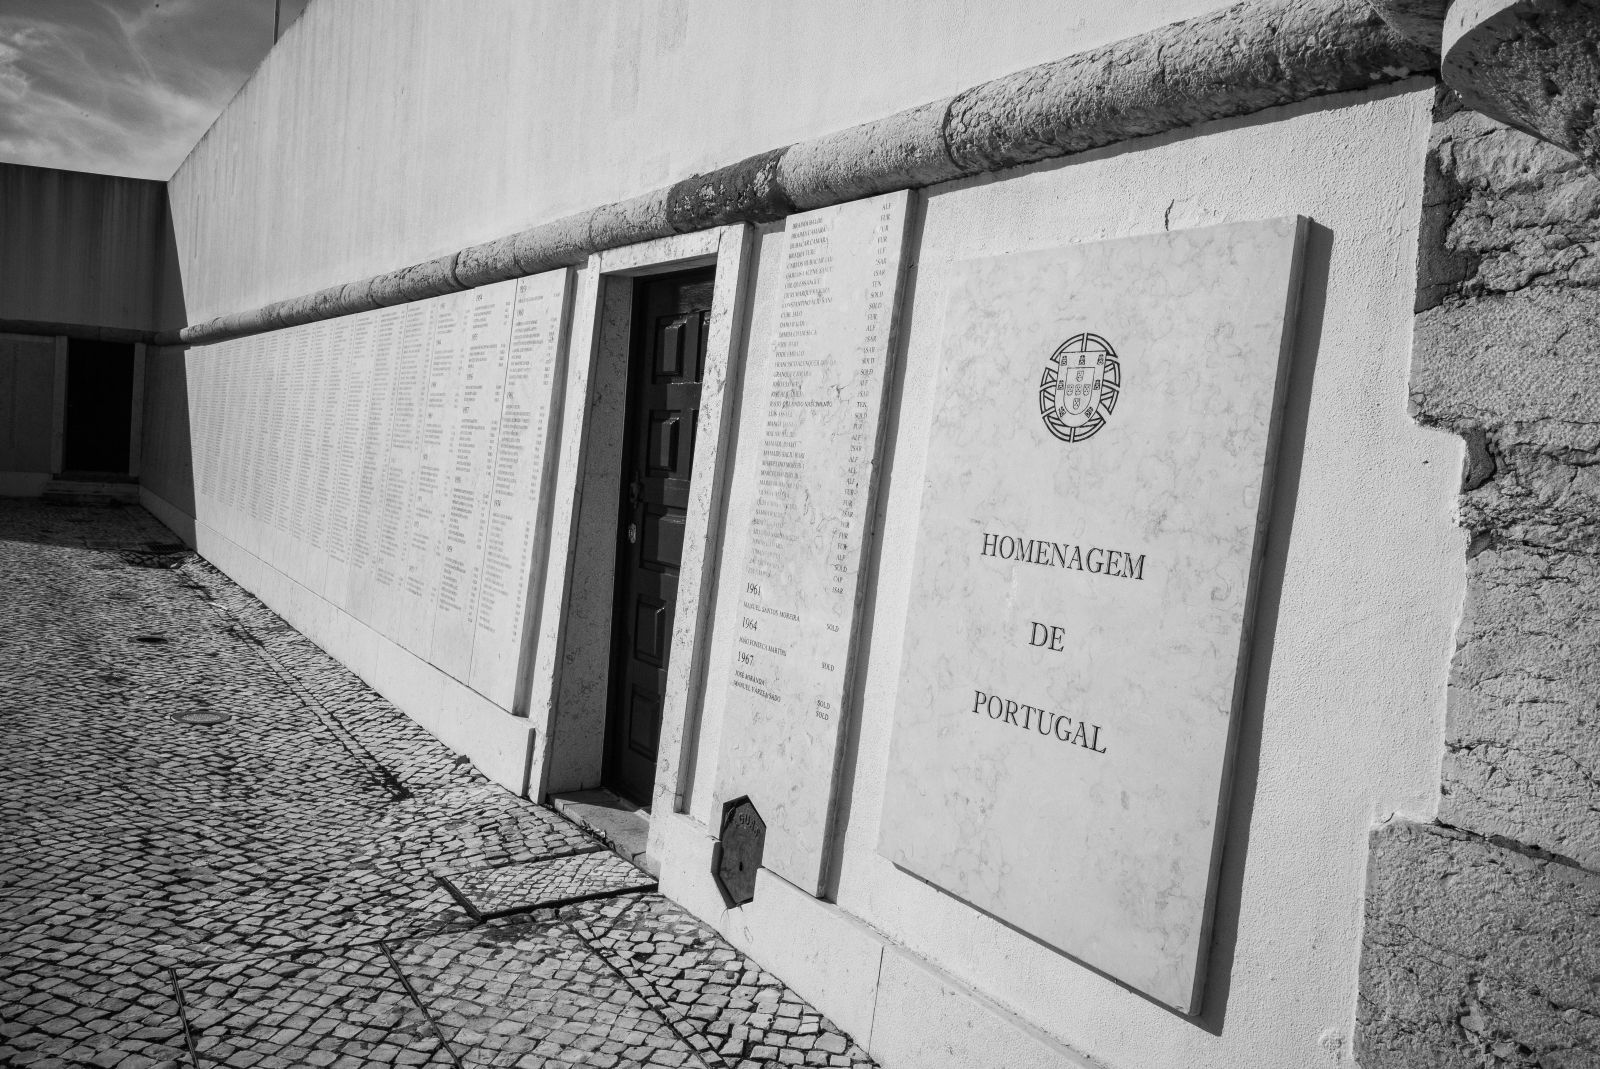 Ansichten des Monumento aos Combatentes do Ultramar, Lisboa, 2020. Foto: © Rui Sérgio Afonso